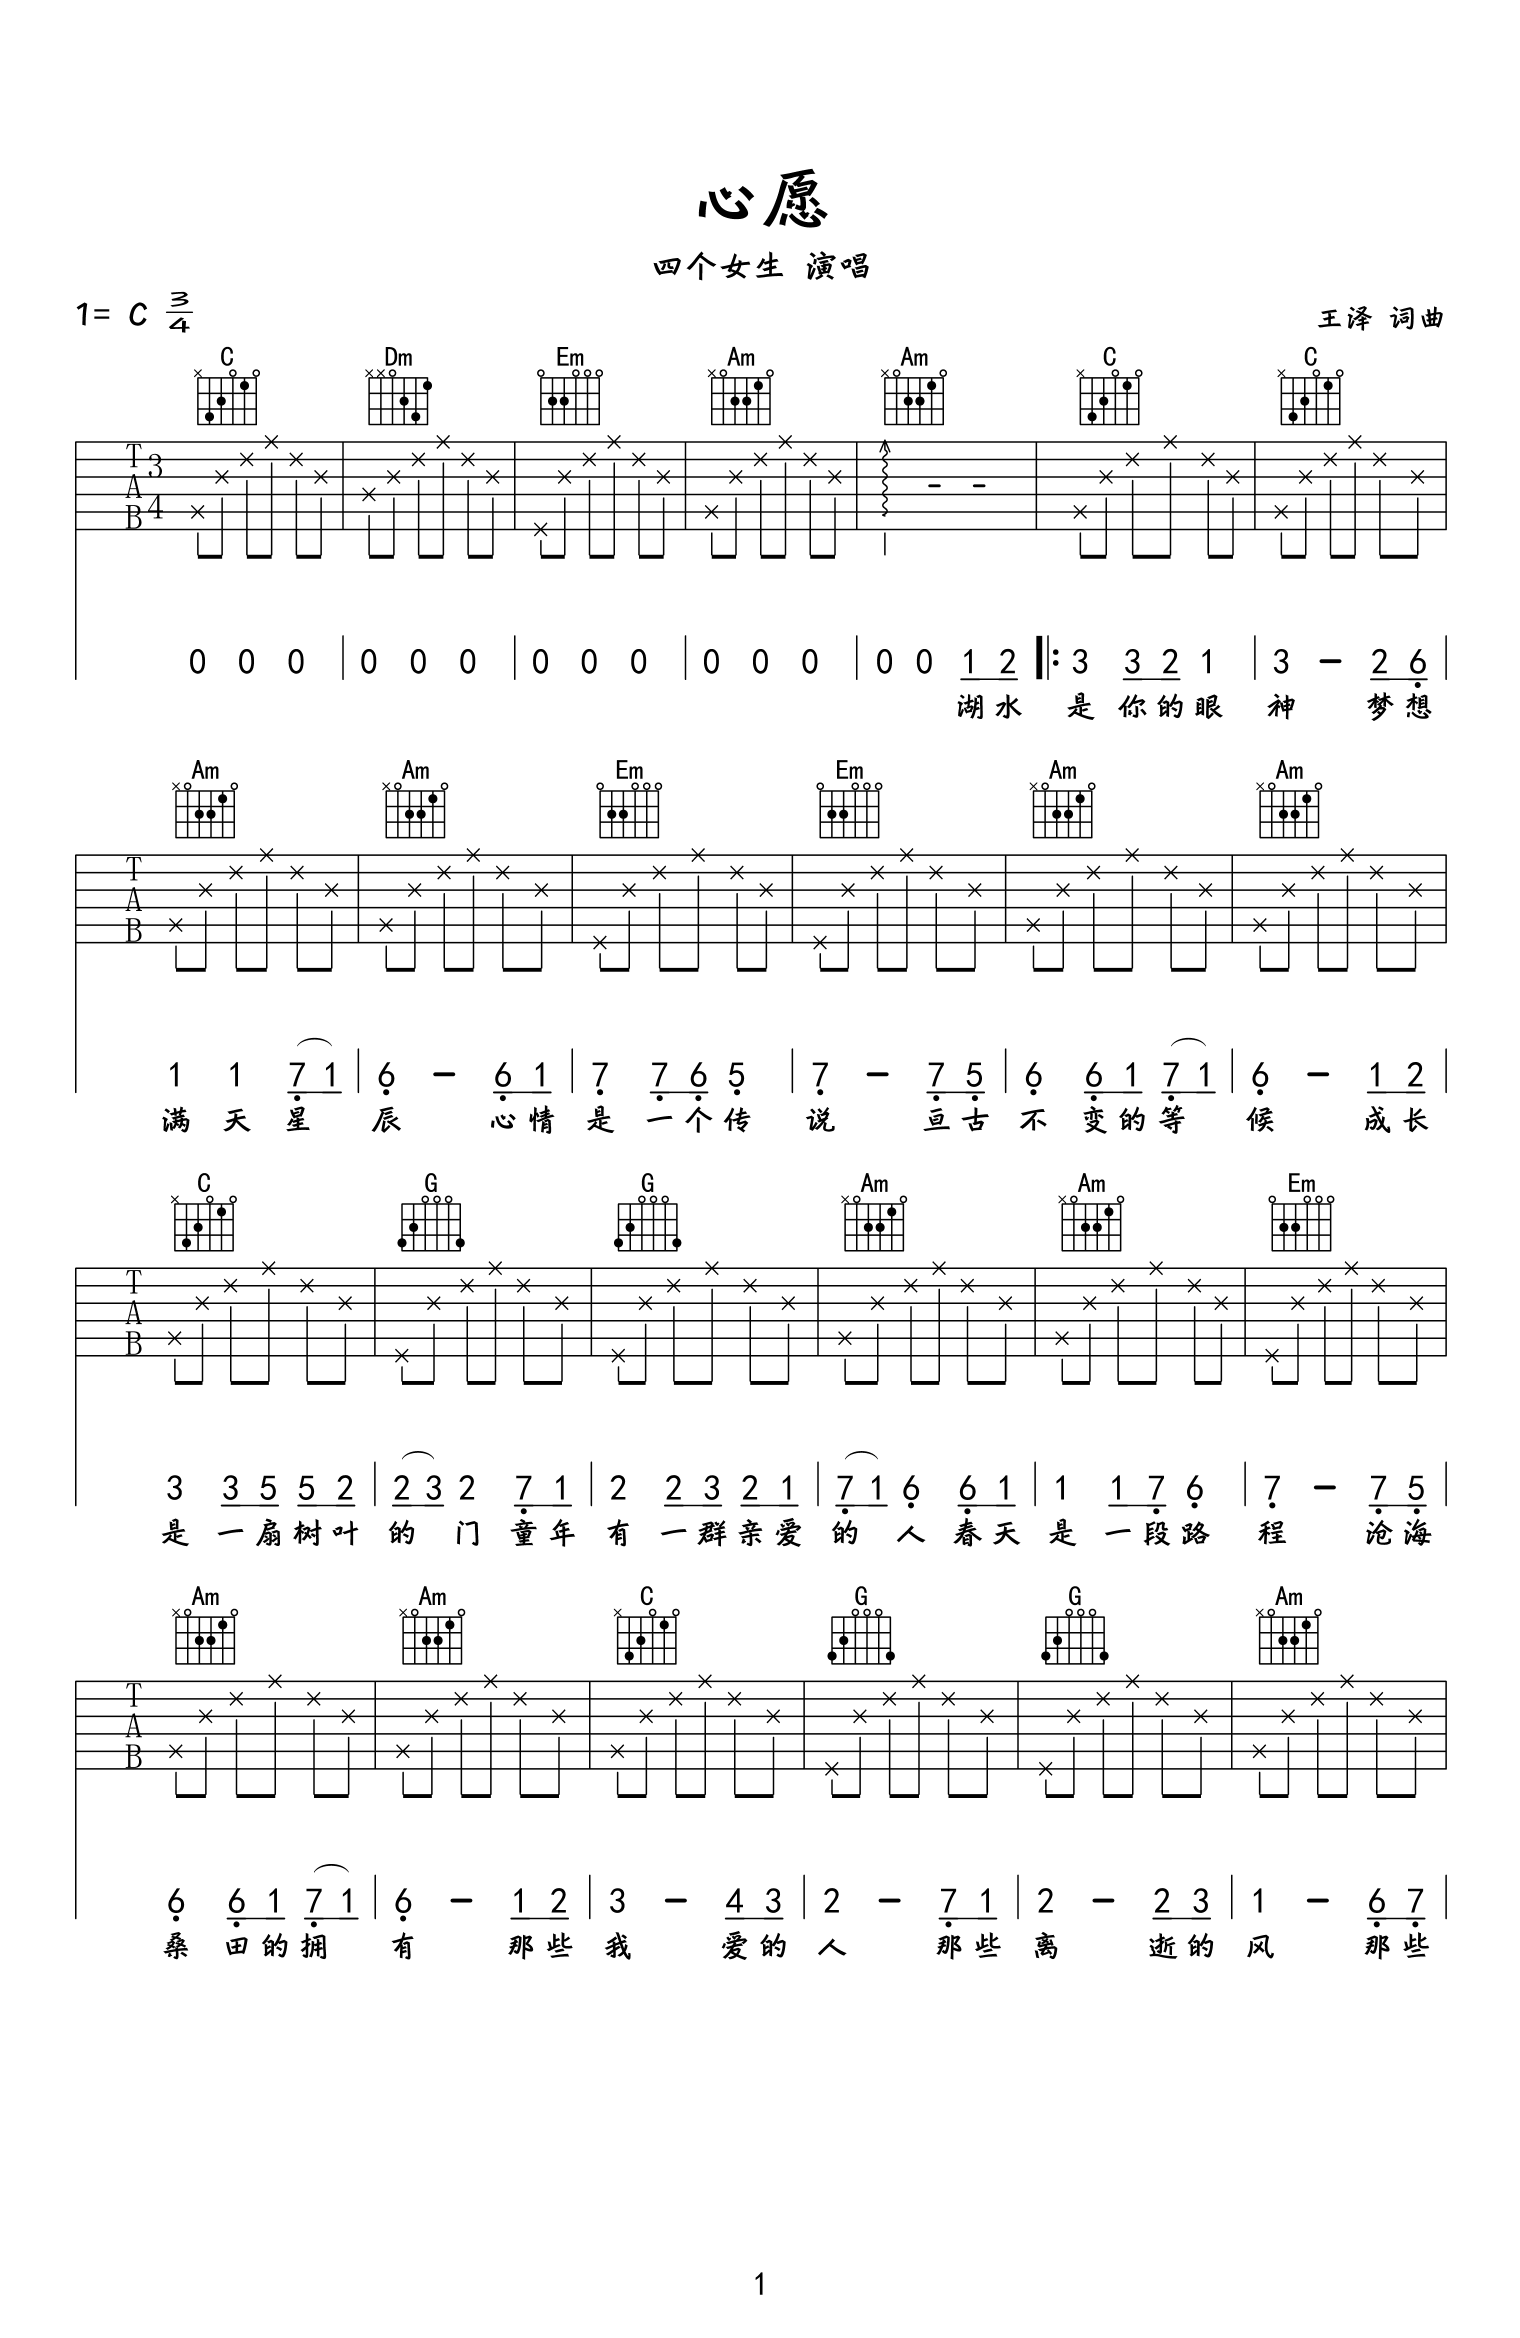 校园民谣吉他歌曲《白桦林》e小调/四三拍/分解和弦-民谣吉他谱 - 乐器学习网